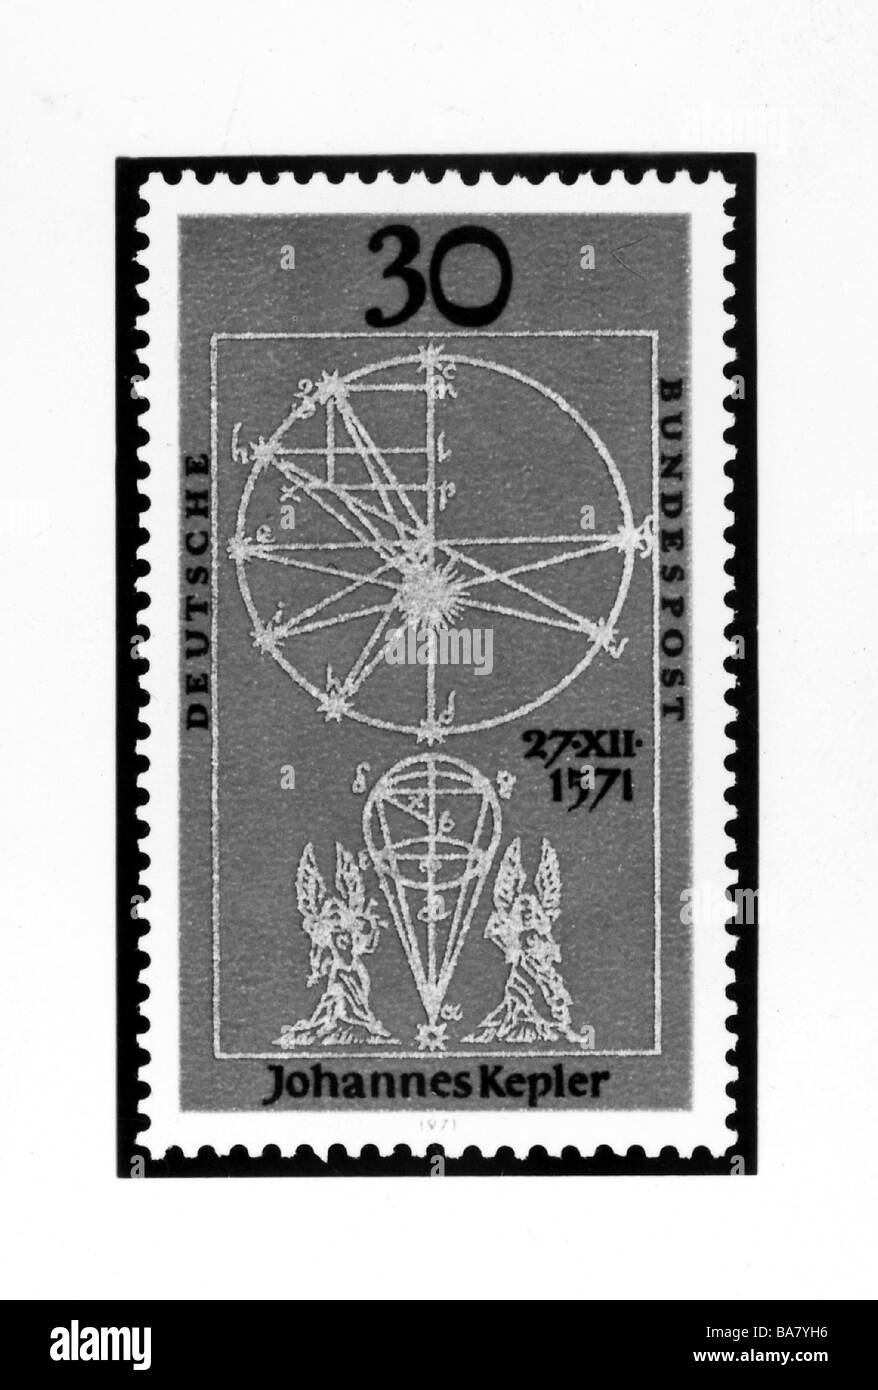 Kepler, Johannes, 27.12.1571 - 15.11.1630, astronome allemand, 30 pfennig timbre avec des illustrations de son œuvre 'Astronomia nova' de 1609, probablement 1971, Banque D'Images